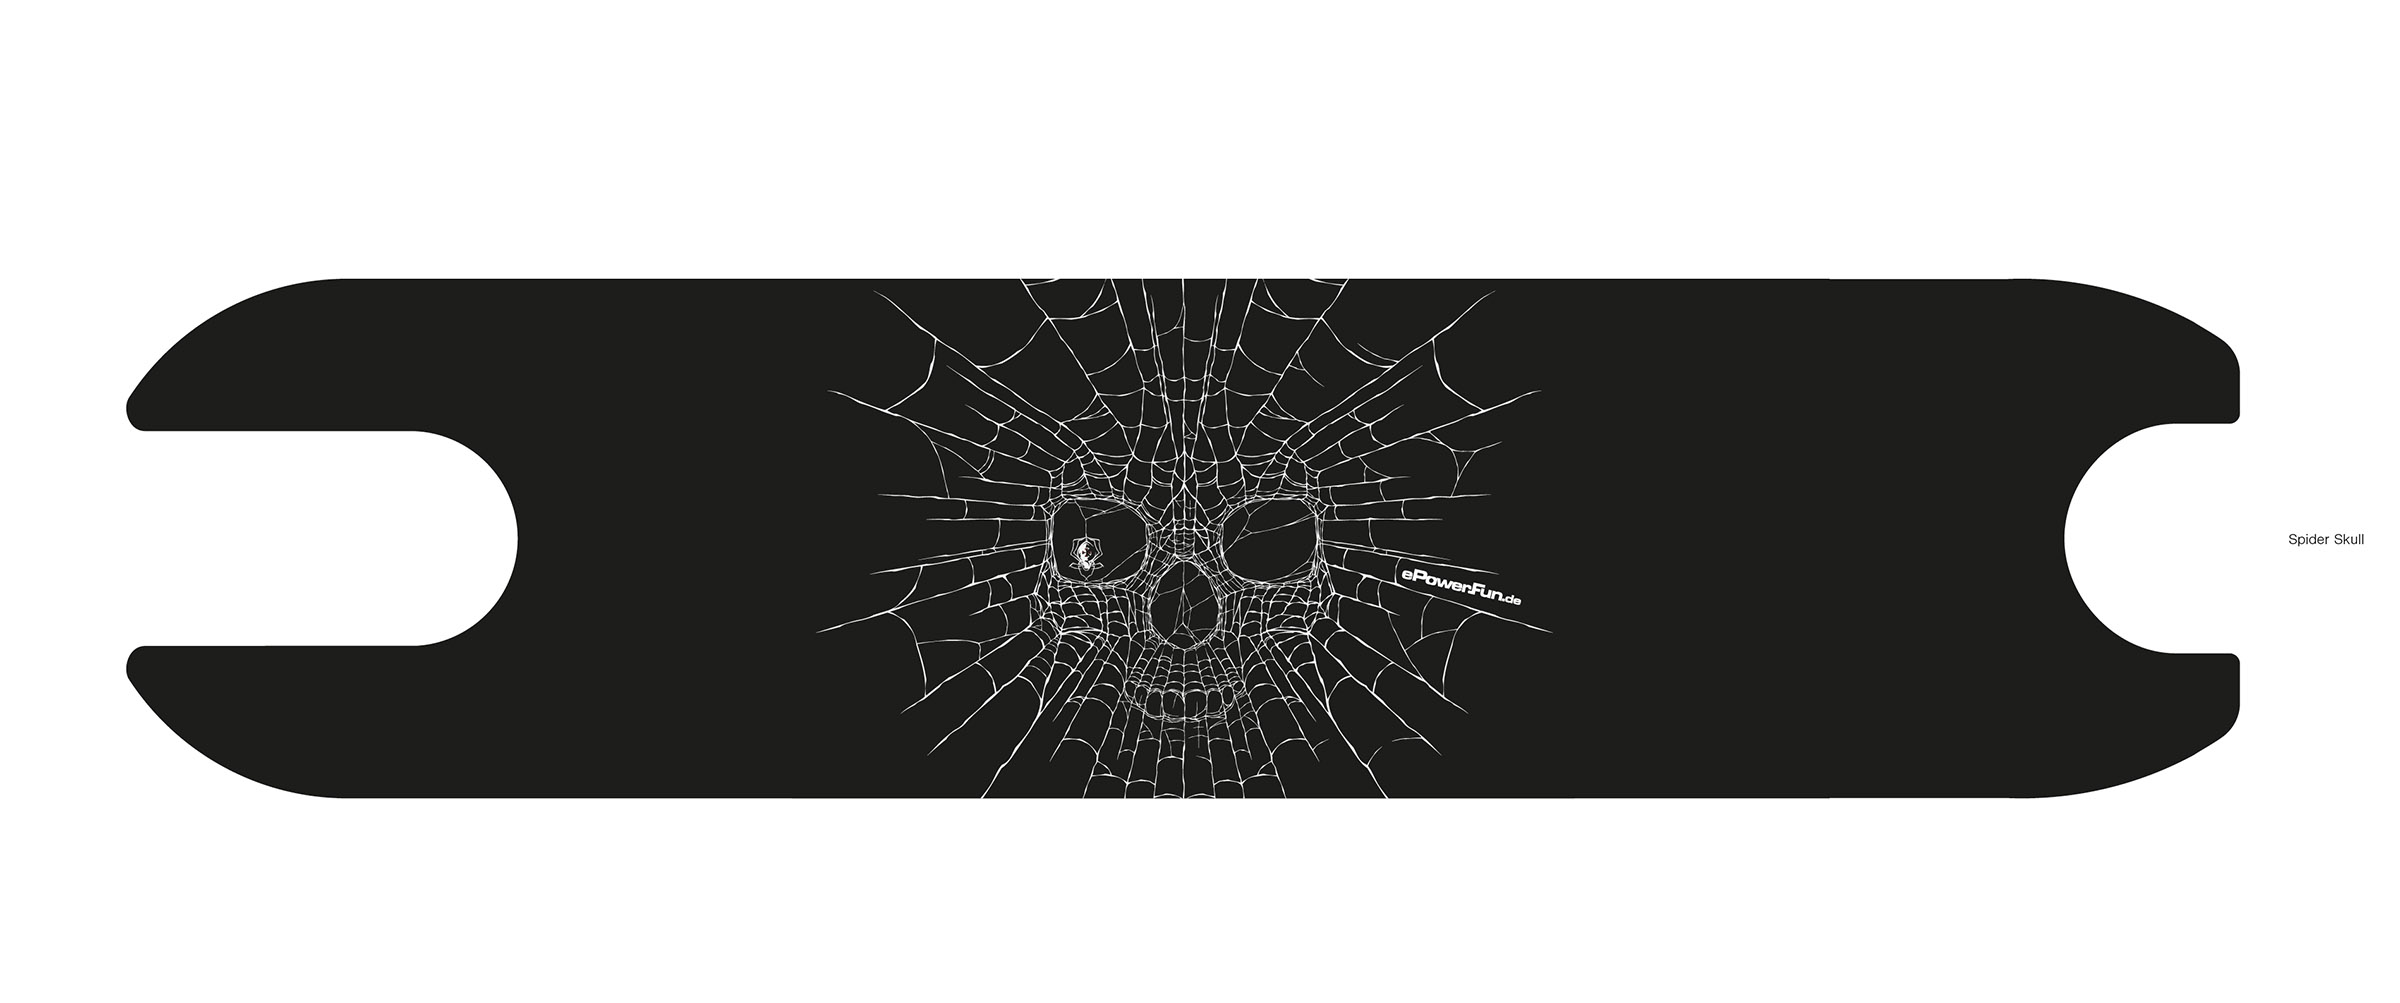 Griptape Spider Skull (selbstklebend)